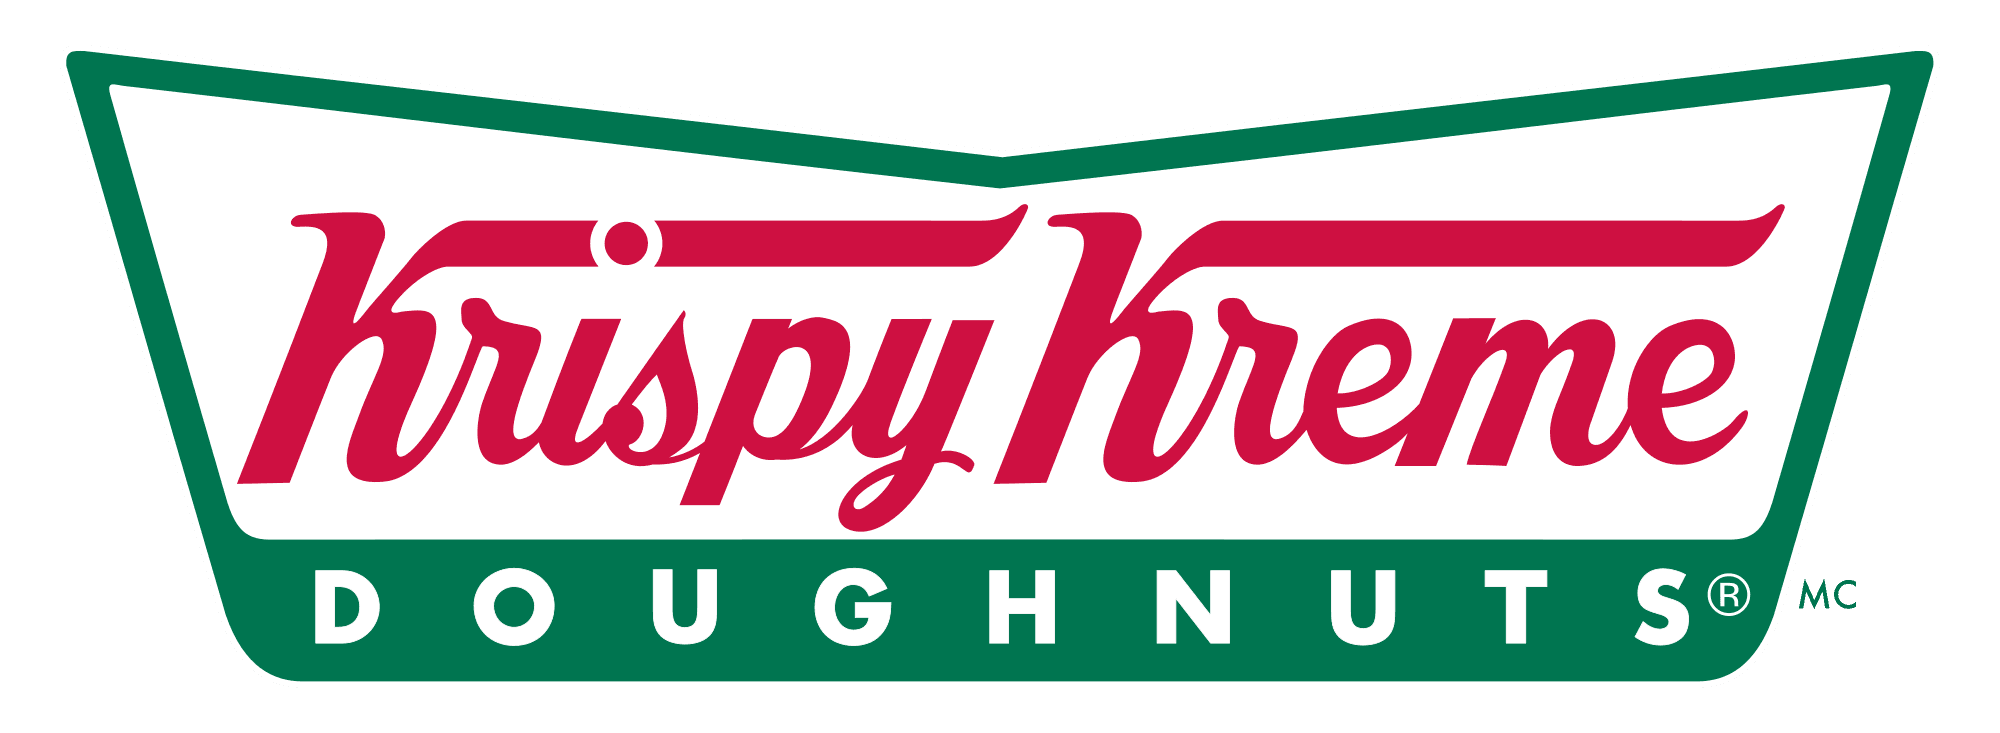 Krispy-kreme-logo